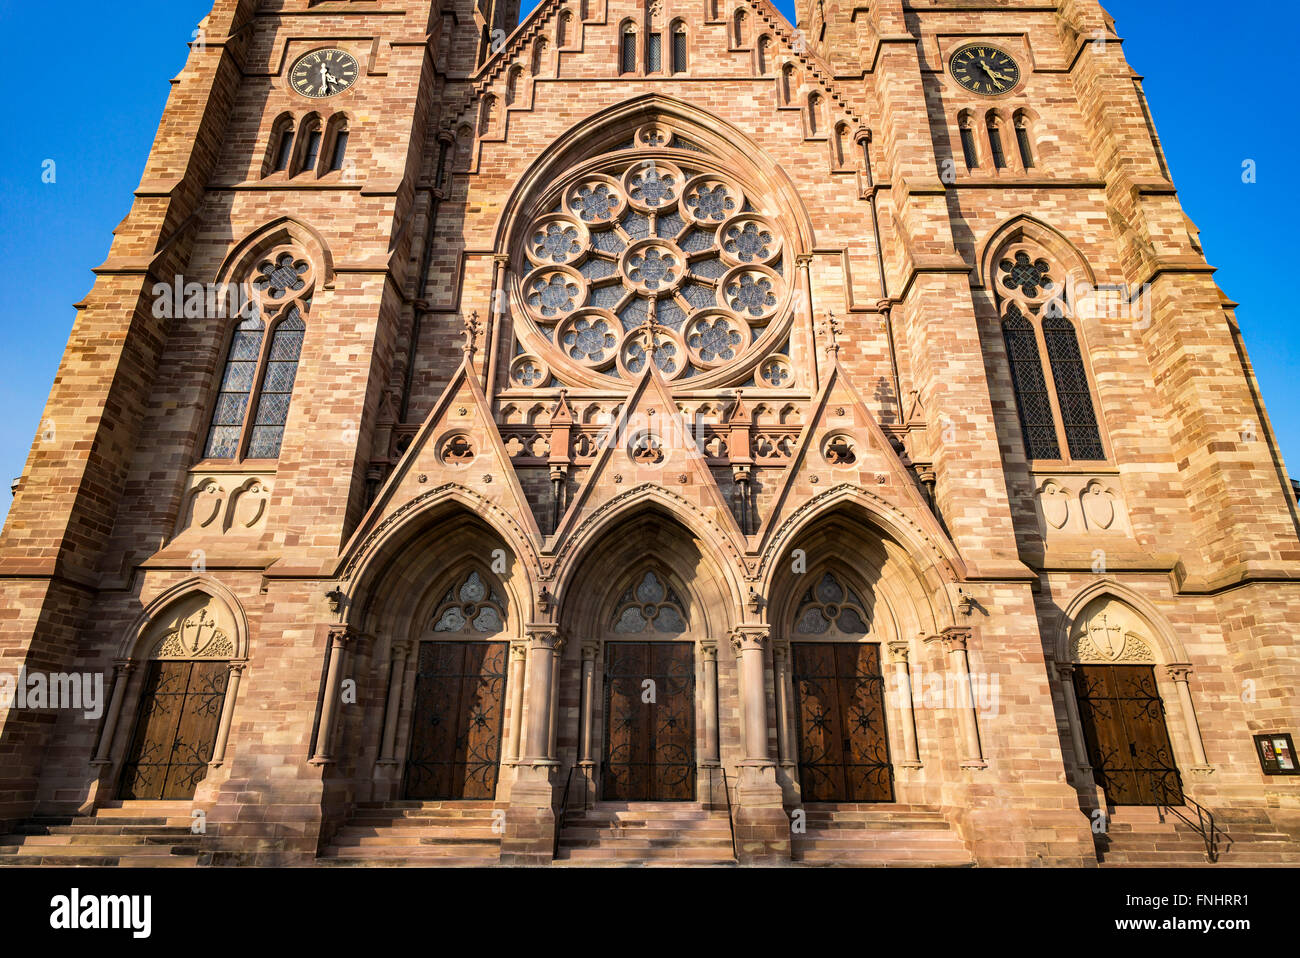 Portails et fenêtre rose de St Paul église protestante du 19e siècle, Strasbourg, Alsace, France Banque D'Images